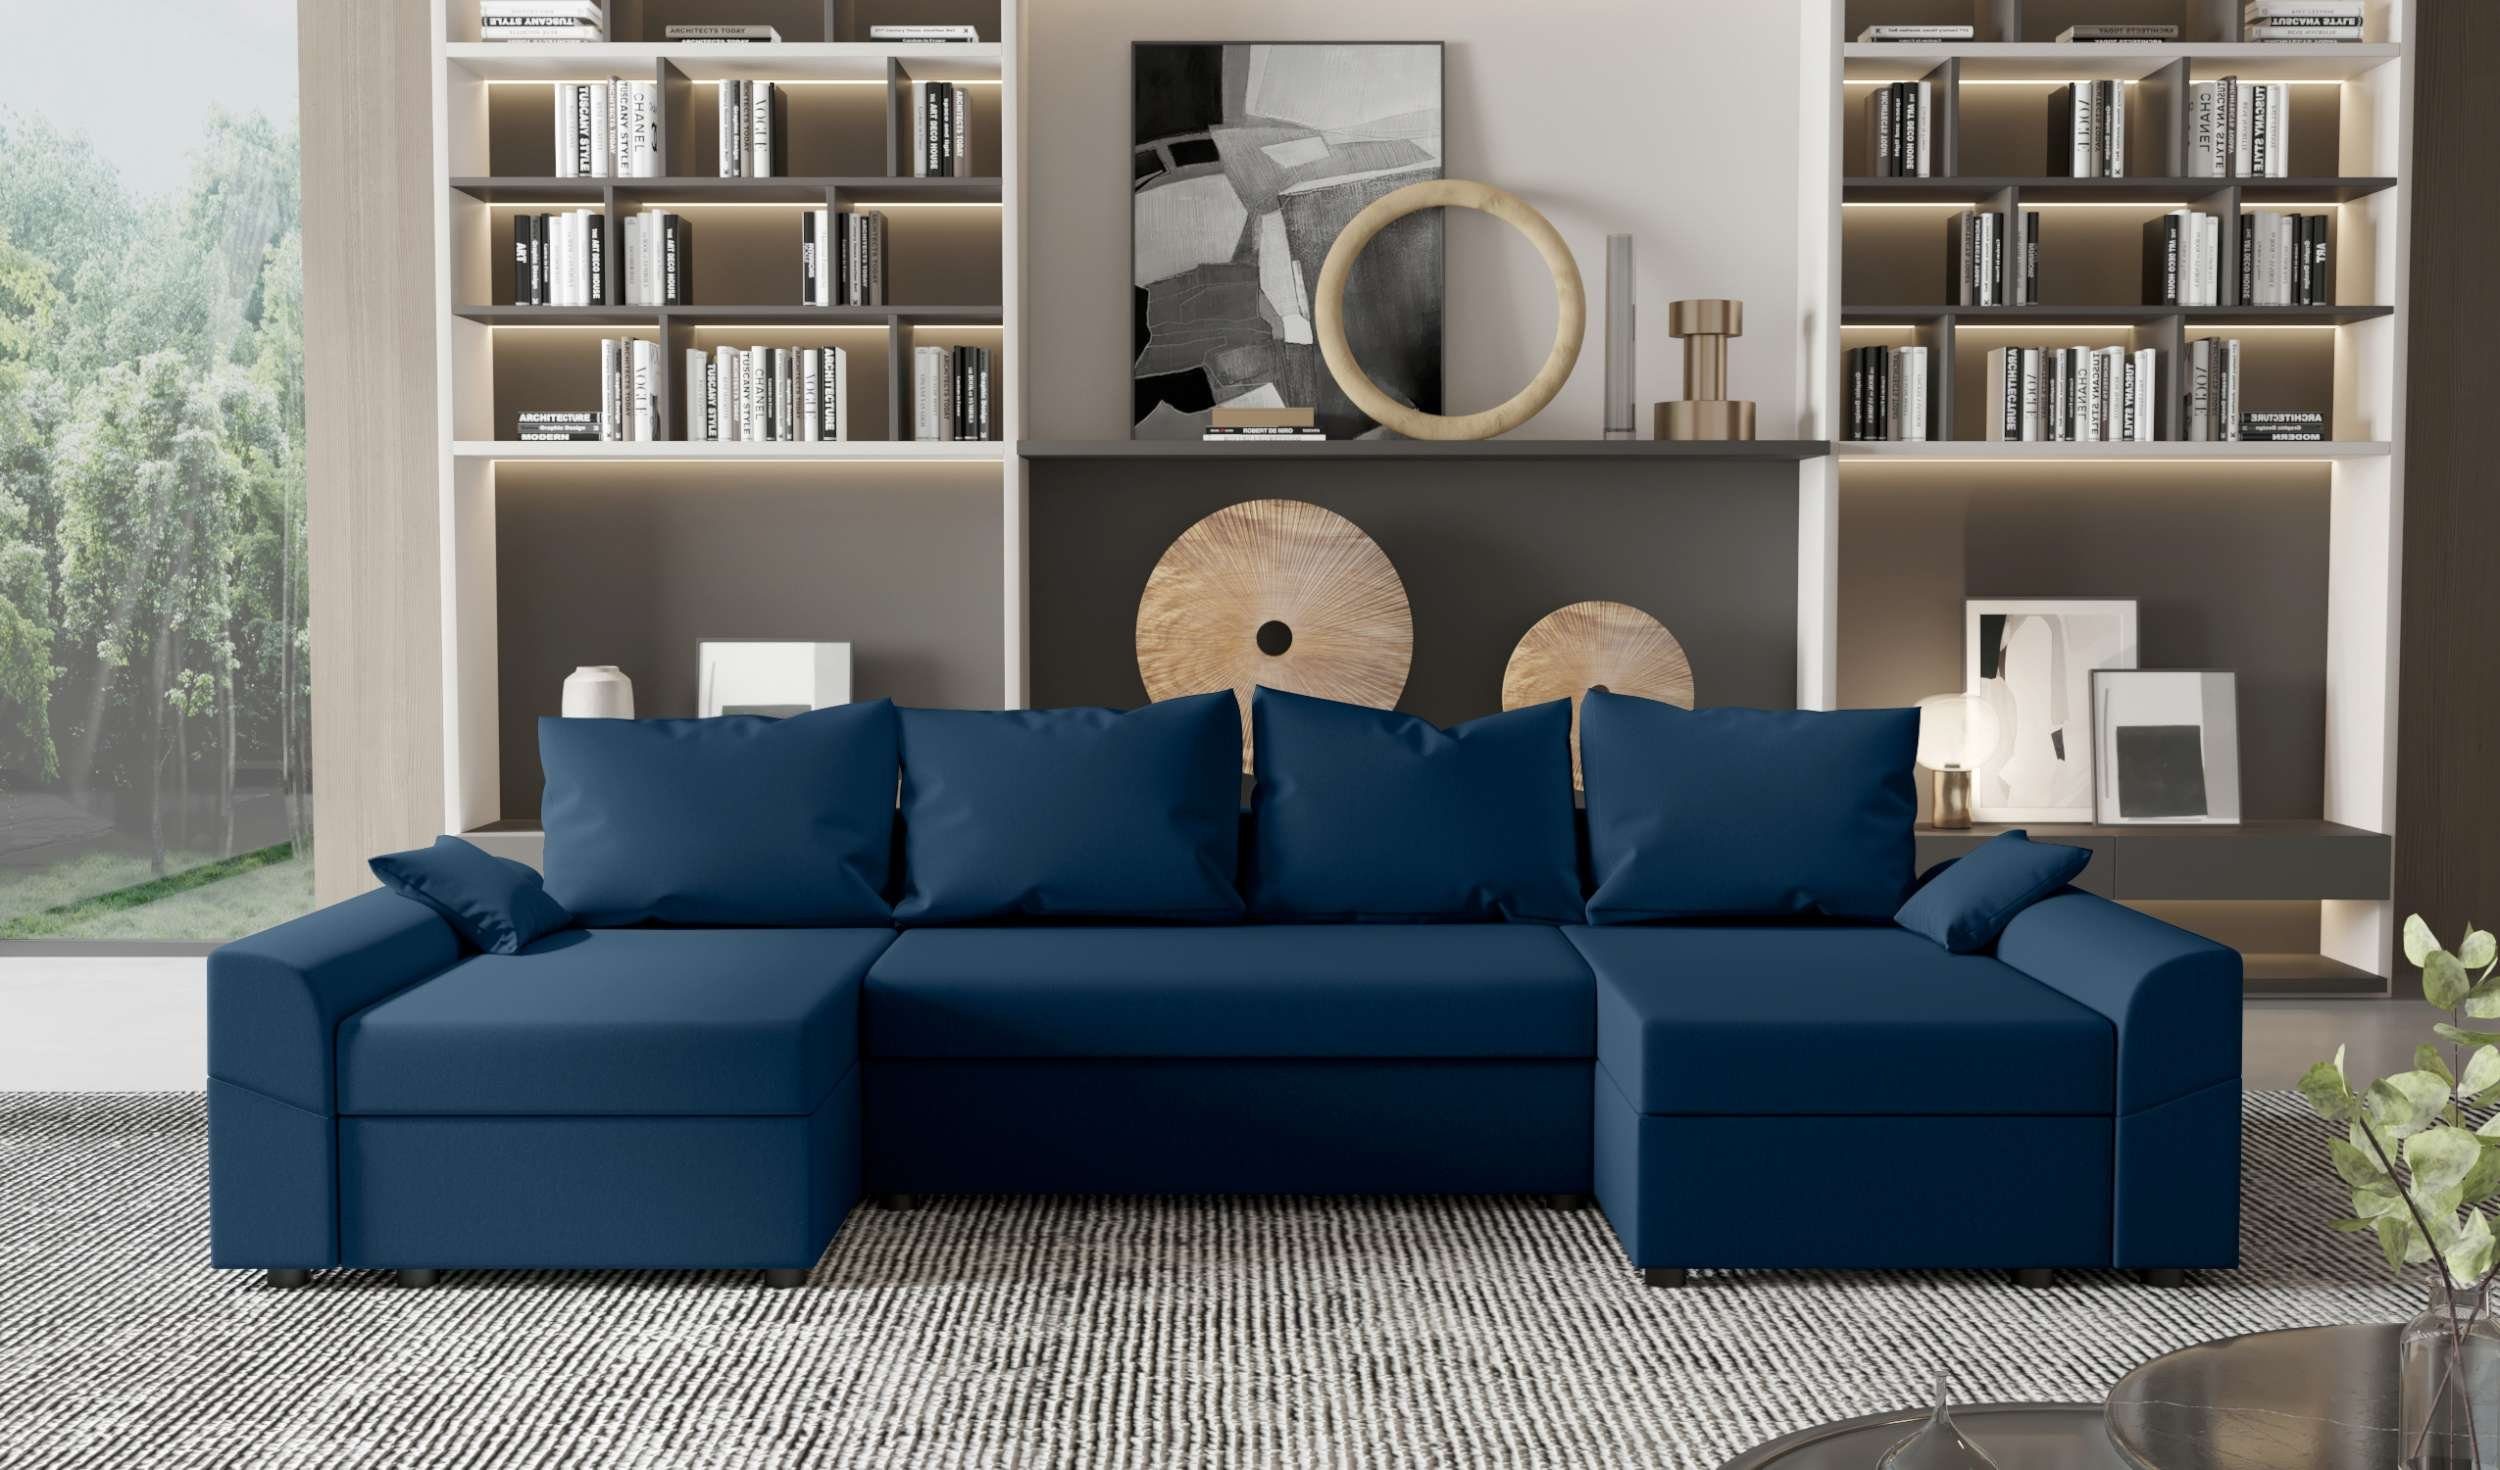 mit Sofa, Design Carolina, Bettkasten, Modern Wohnlandschaft Eckcouch, U-Form, mit Stylefy Sitzkomfort, Bettfunktion,